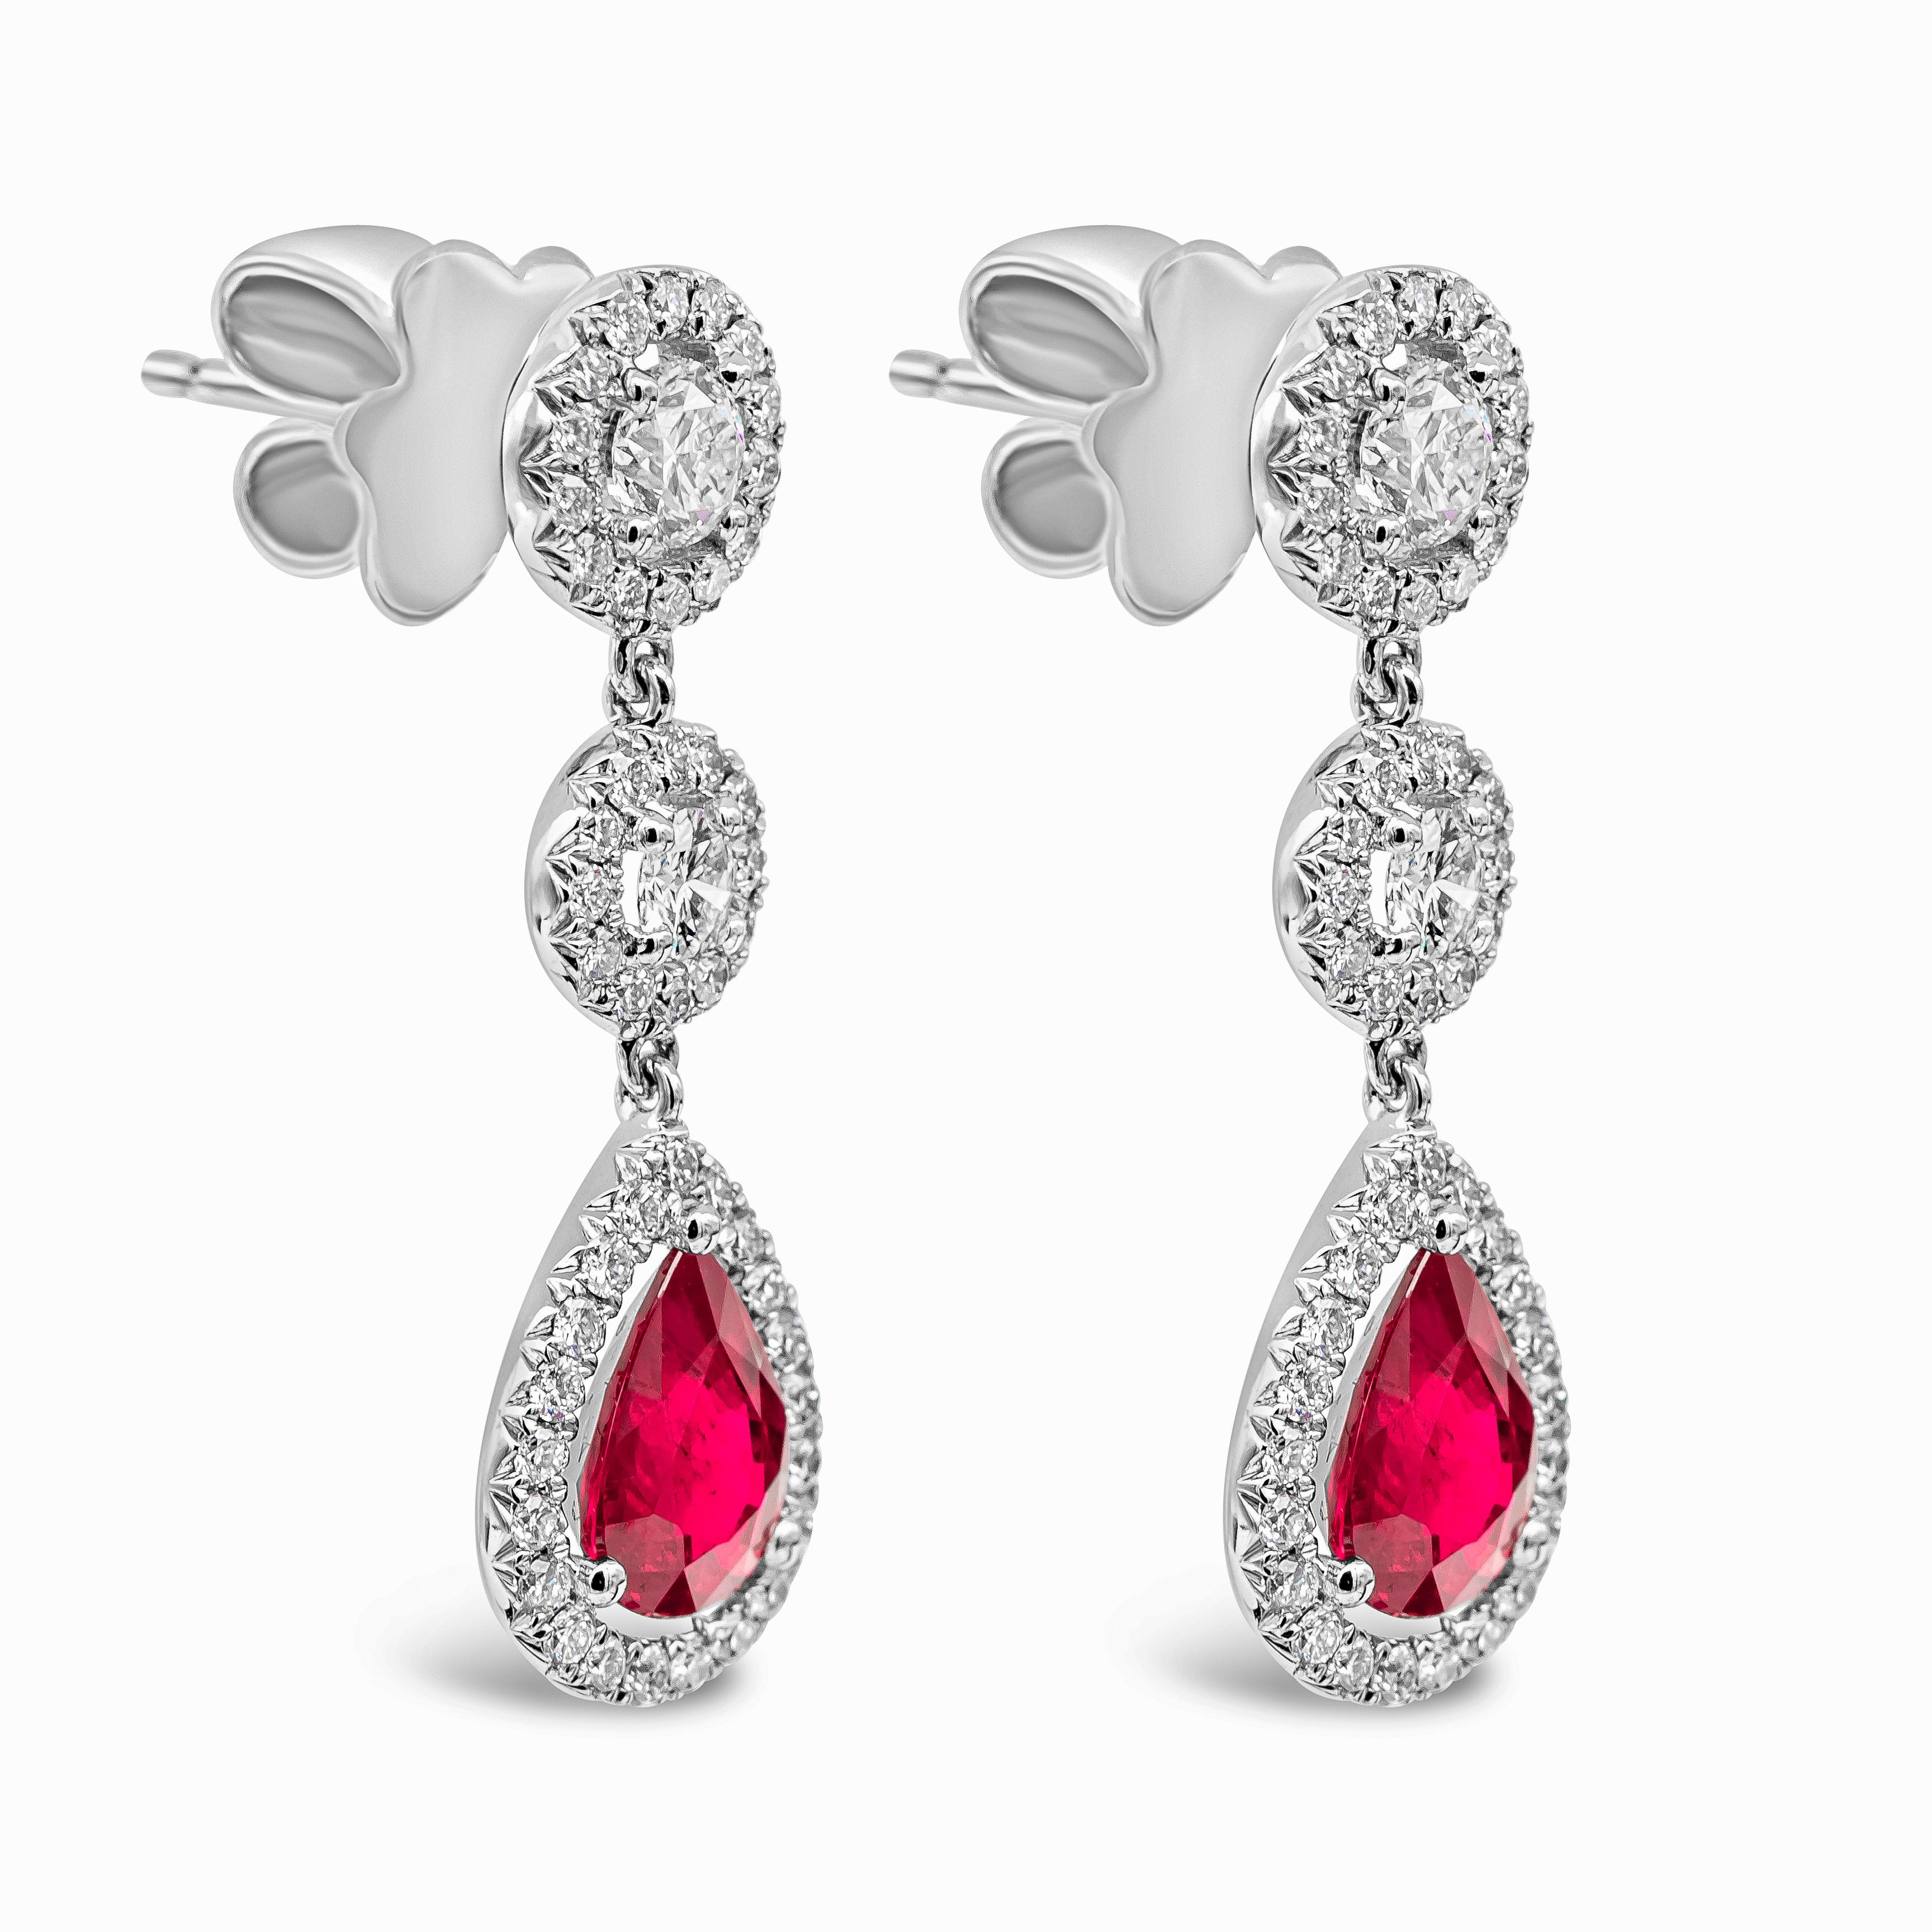 Une paire de boucles d'oreilles pendantes riches en couleurs, mettant en valeur des rubis en forme de poire sertis dans un halo de diamants brillants. Rubis suspendus sur deux halos de diamants. Fabriqué en or blanc 18 carats. Les rubis pèsent 2.25